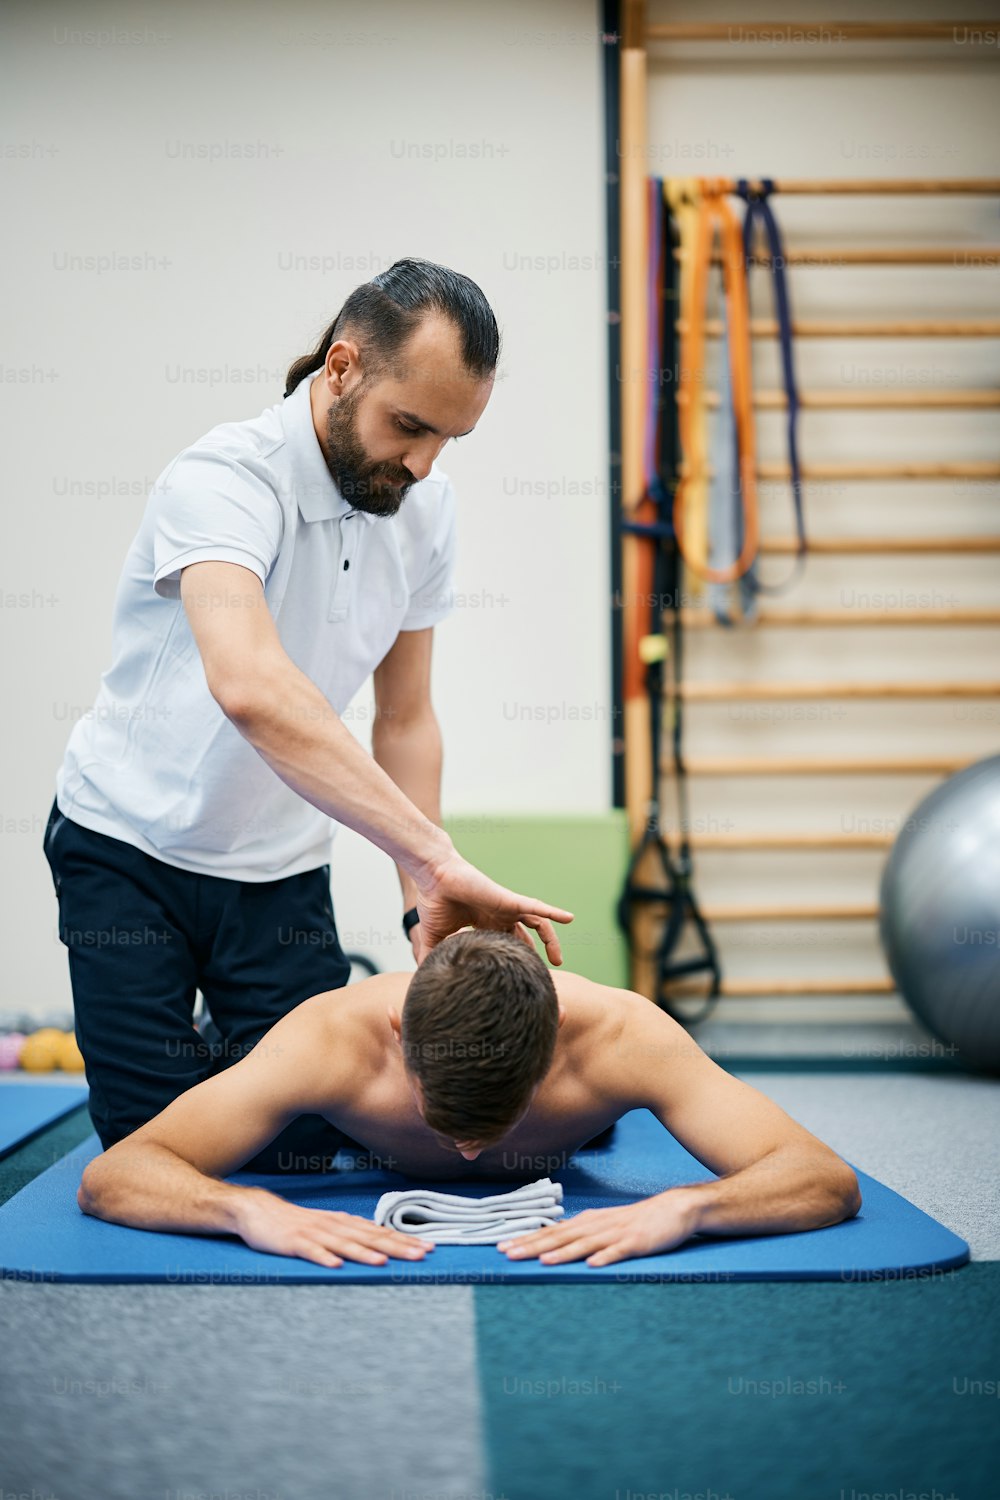 Fisioterapeuta masajeando el cuello del atleta durante el tratamiento de rehabilitación en el gimnasio.